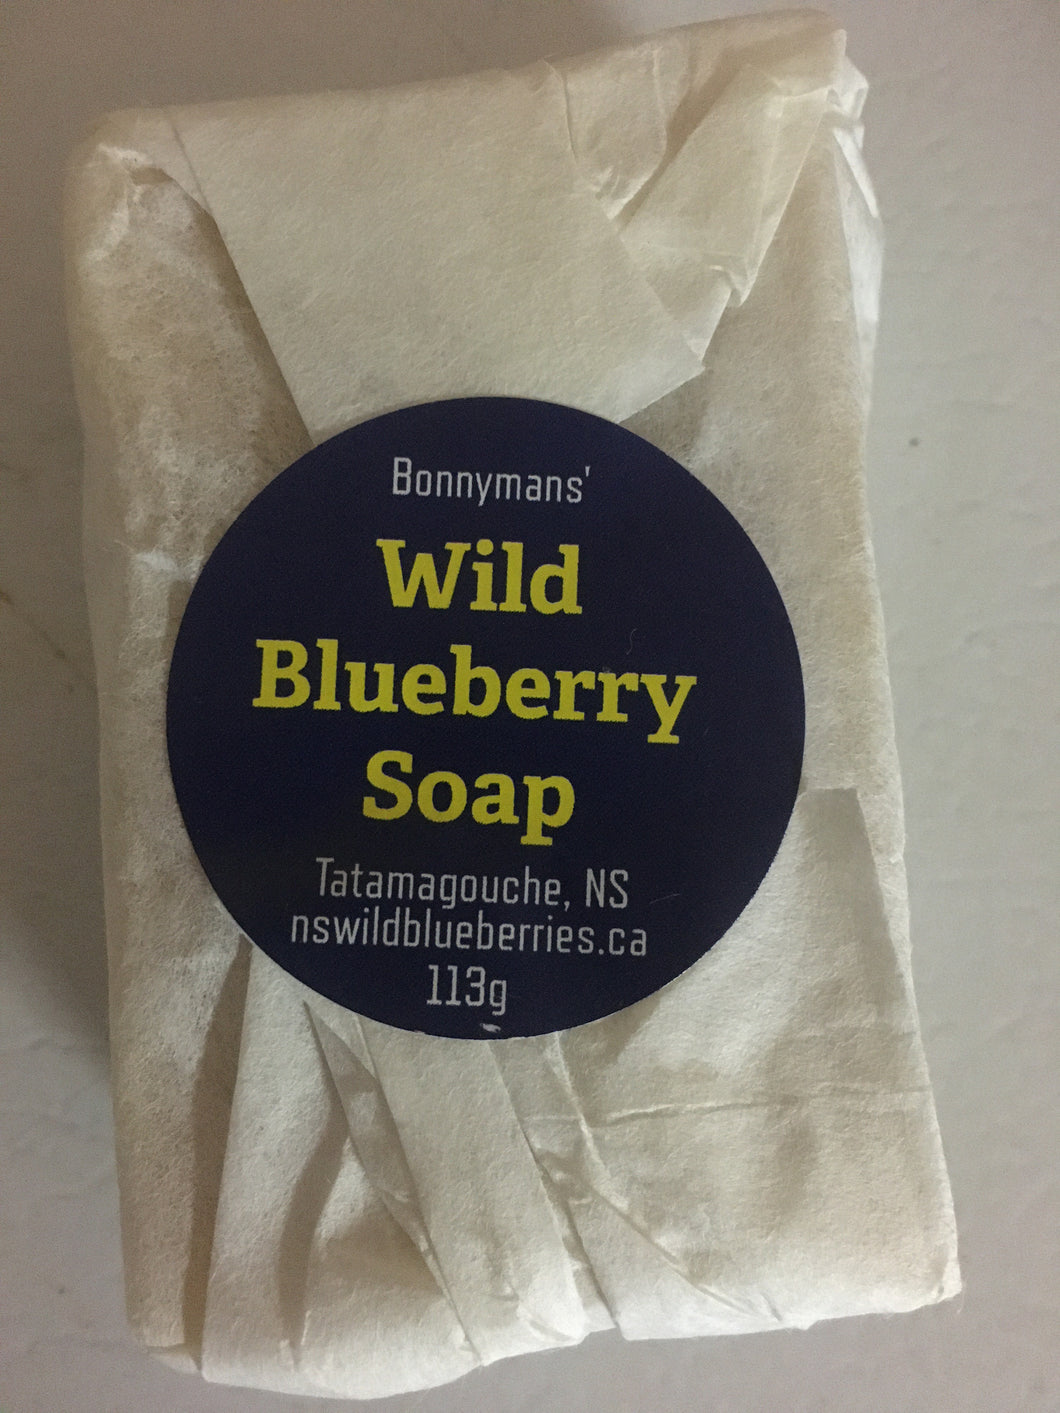 Wild Blueberry soap (with lavender & lemon)- Bonnyman's